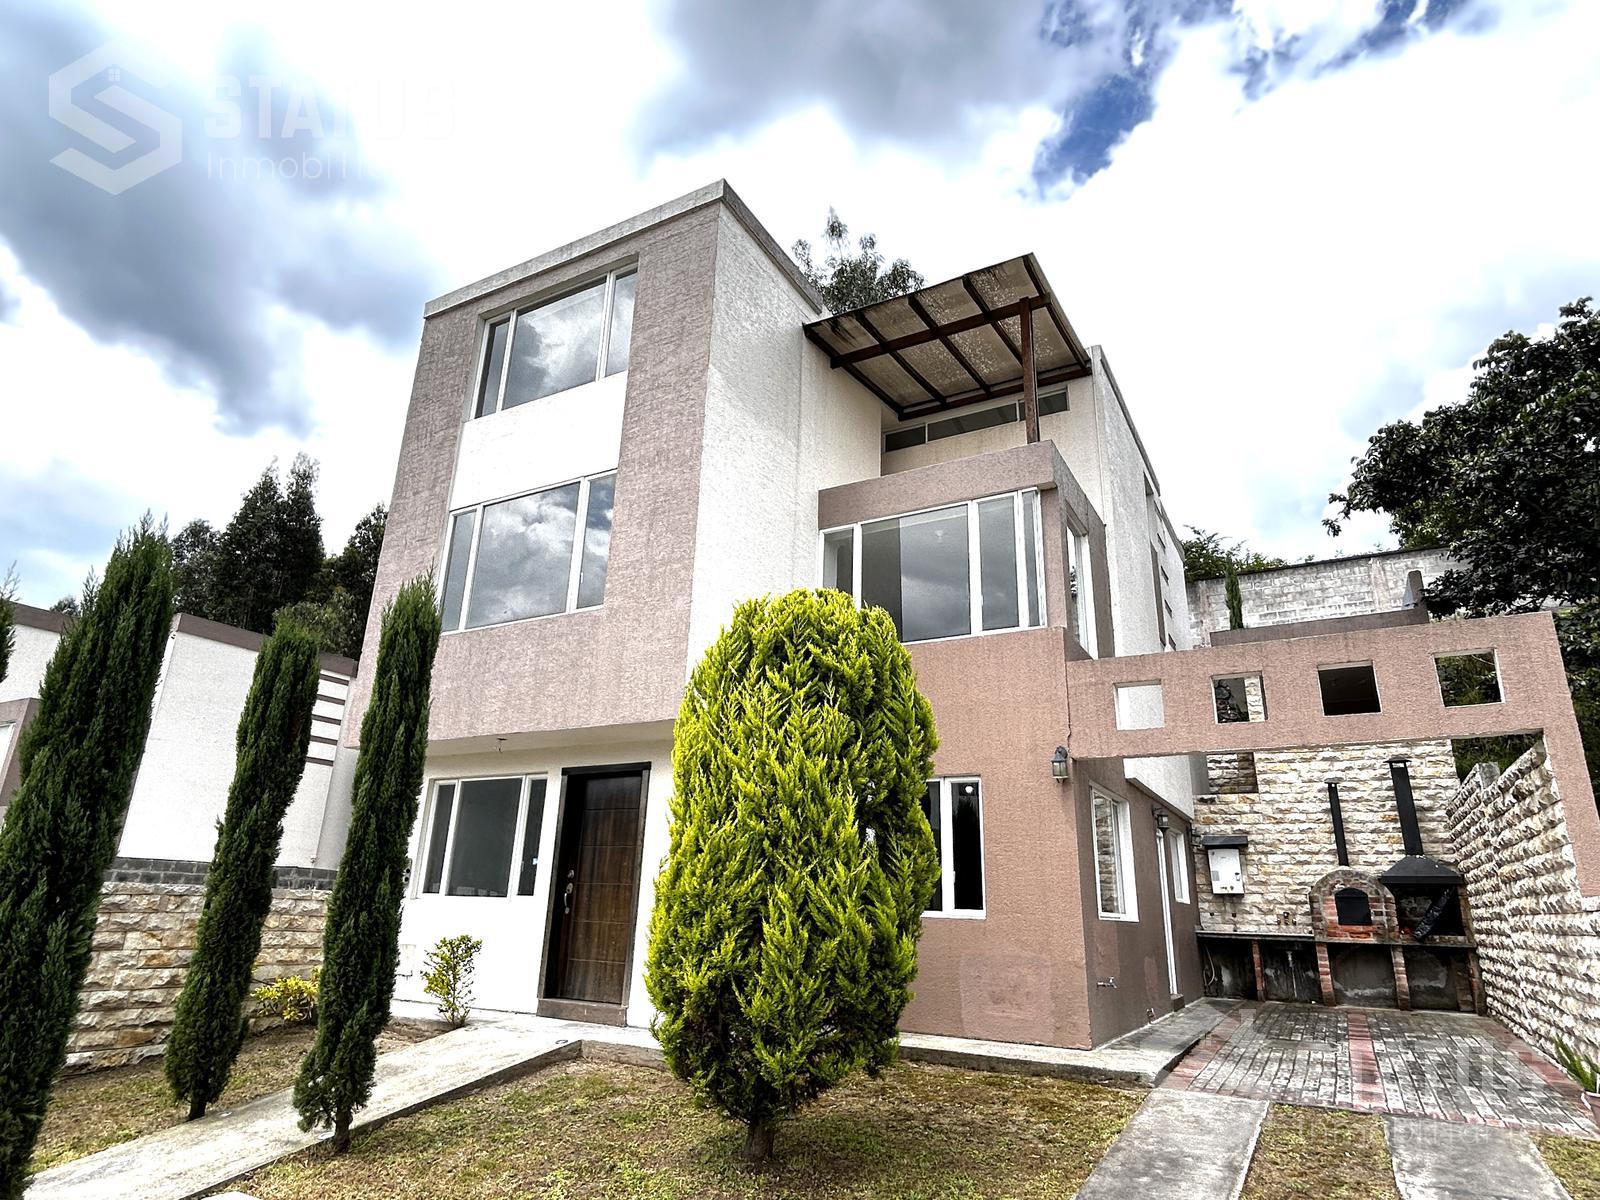 Vendo casa en conjunto sin adosamiento 247 m, 4 Dorm., 2 Garajes, patio, sector Ushimana, $150.000